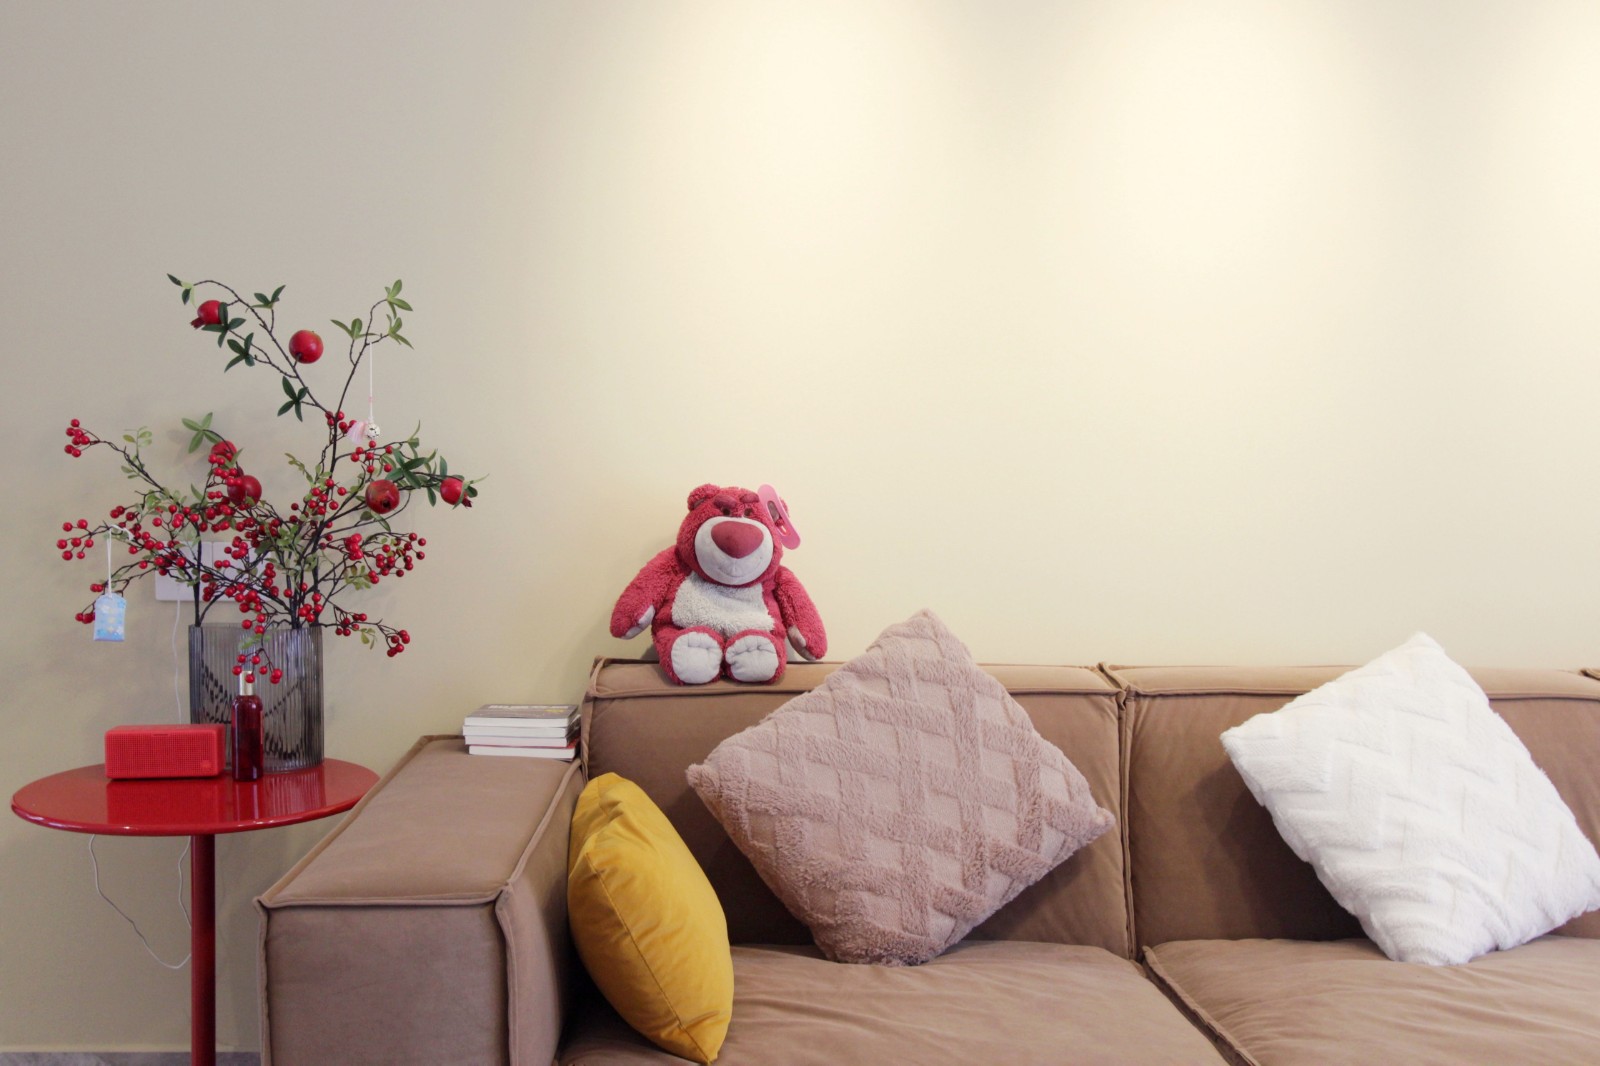 褐色布艺沙发与米色背景墙搭配,温暖舒适,一边放上红色边几,给空间